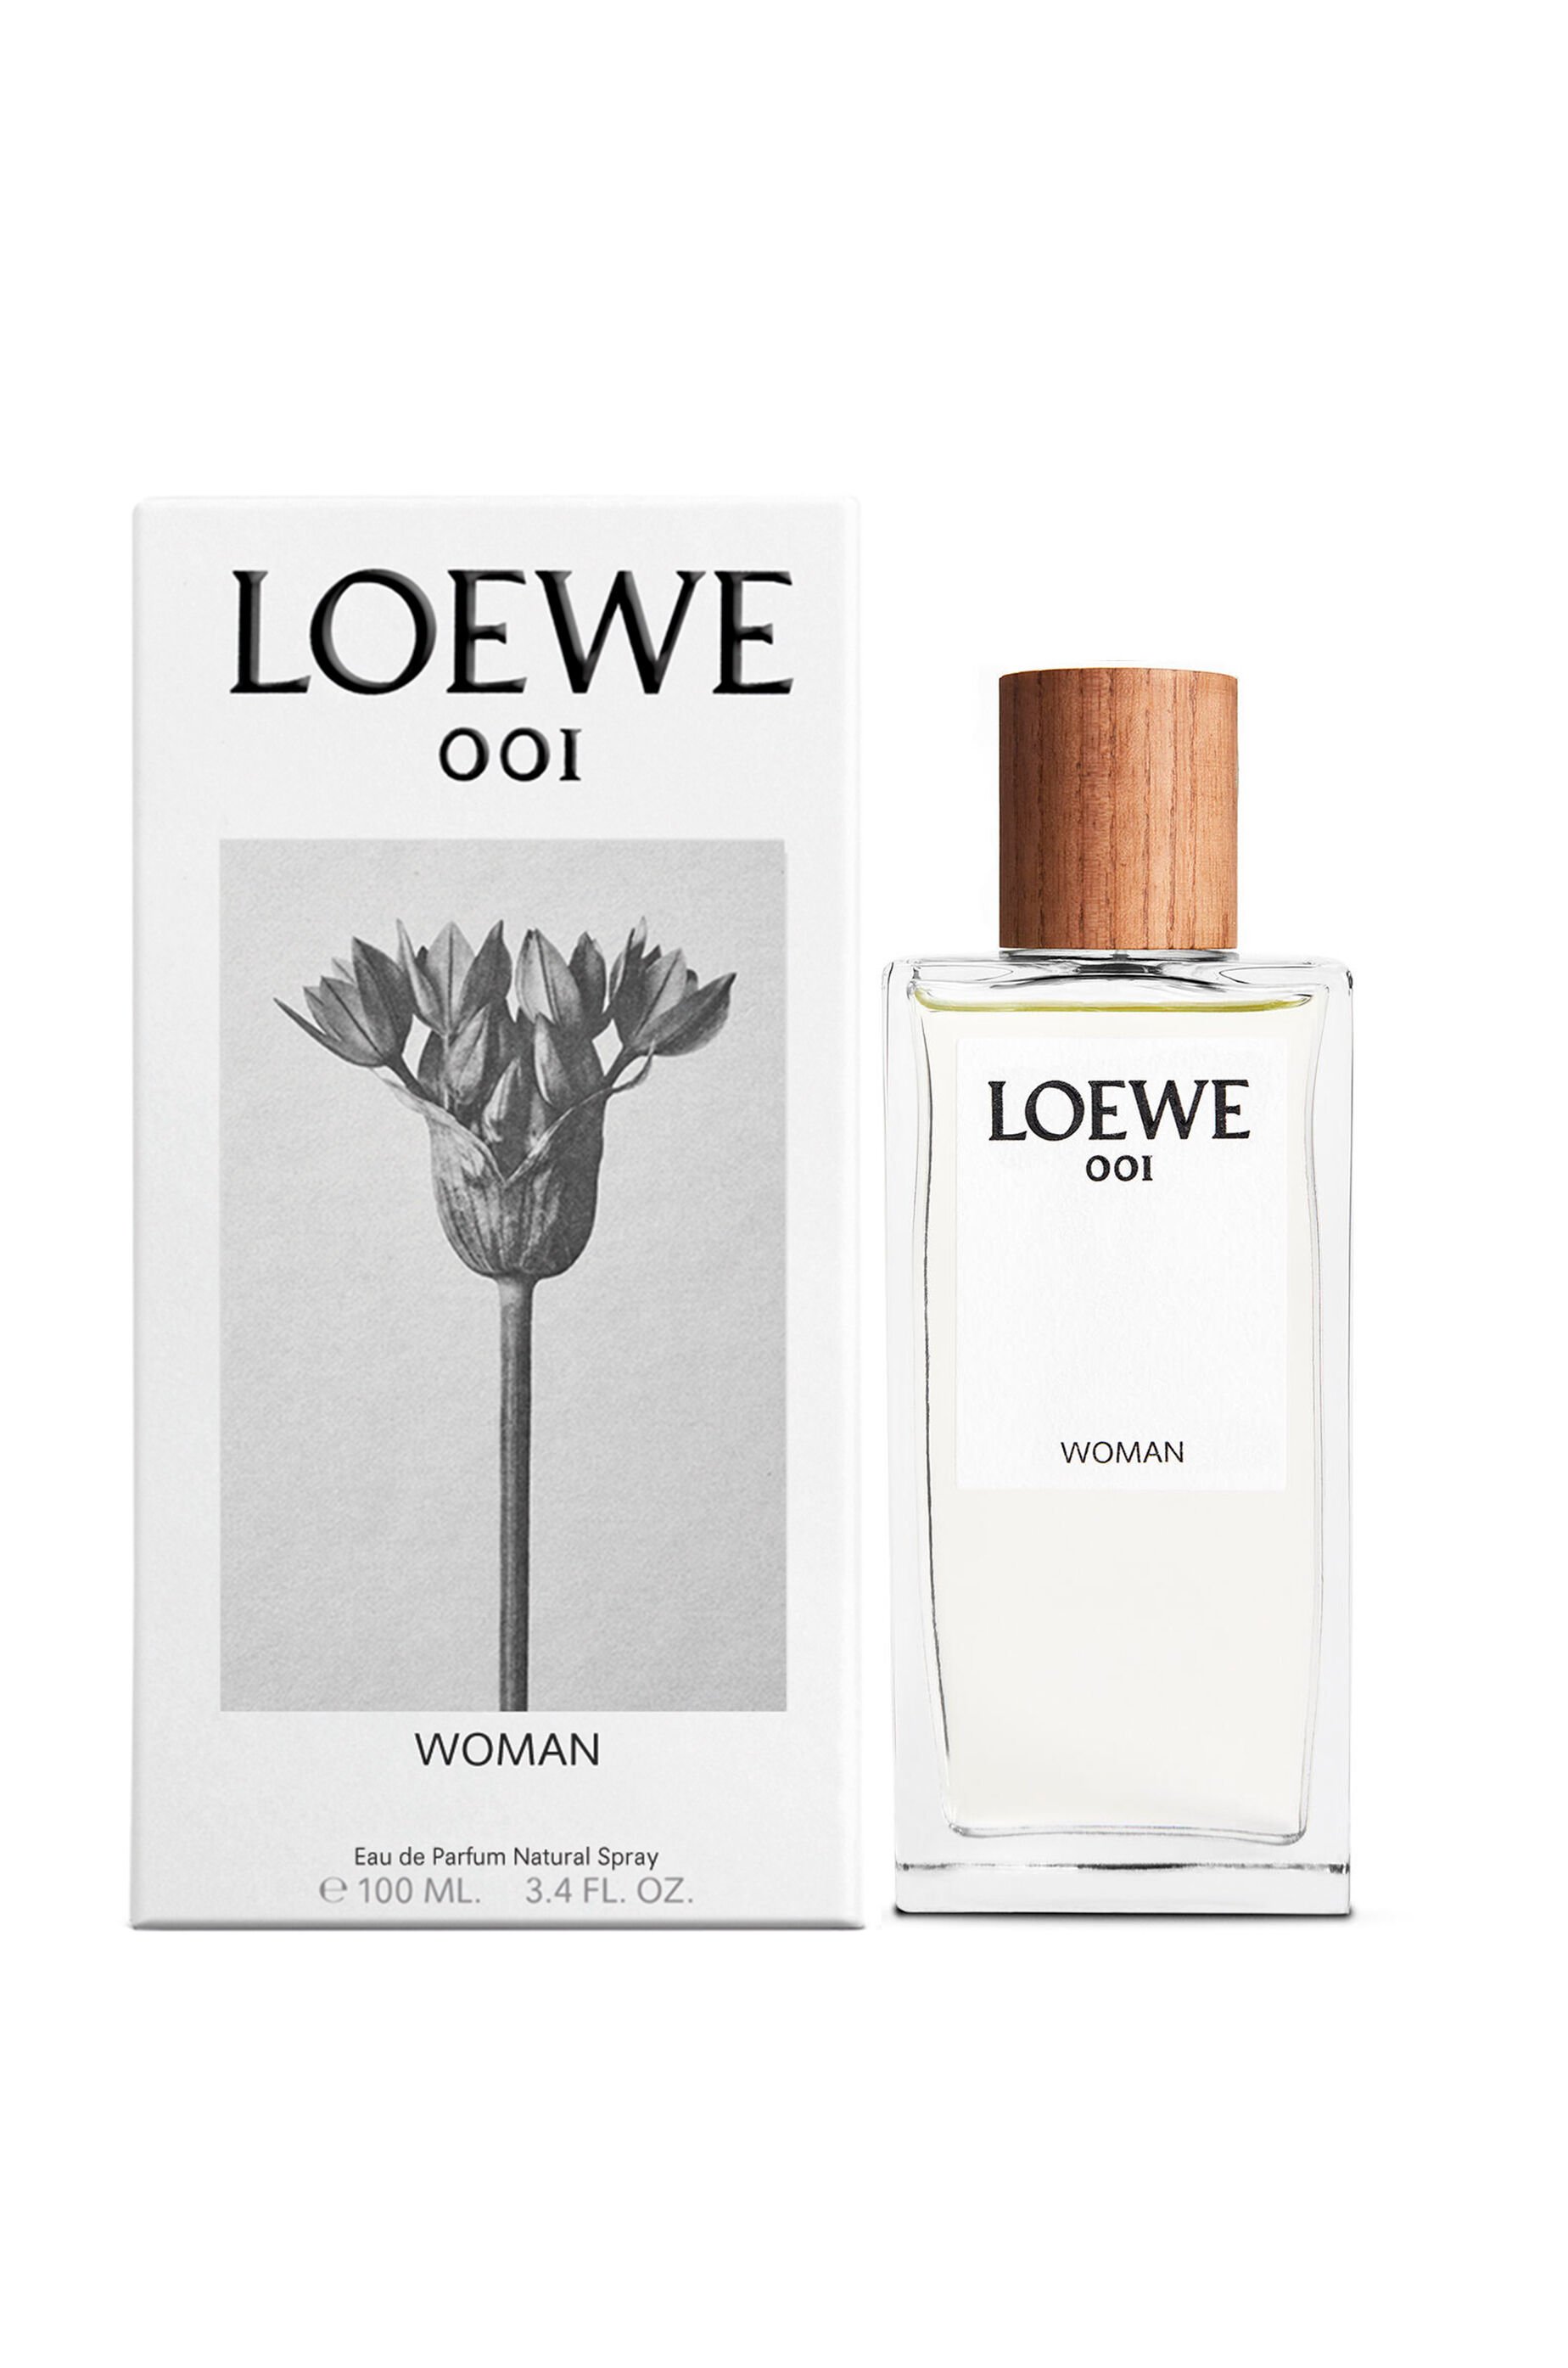 Loewe 001 Woman Eau de Parfum 100ml - LOEWE